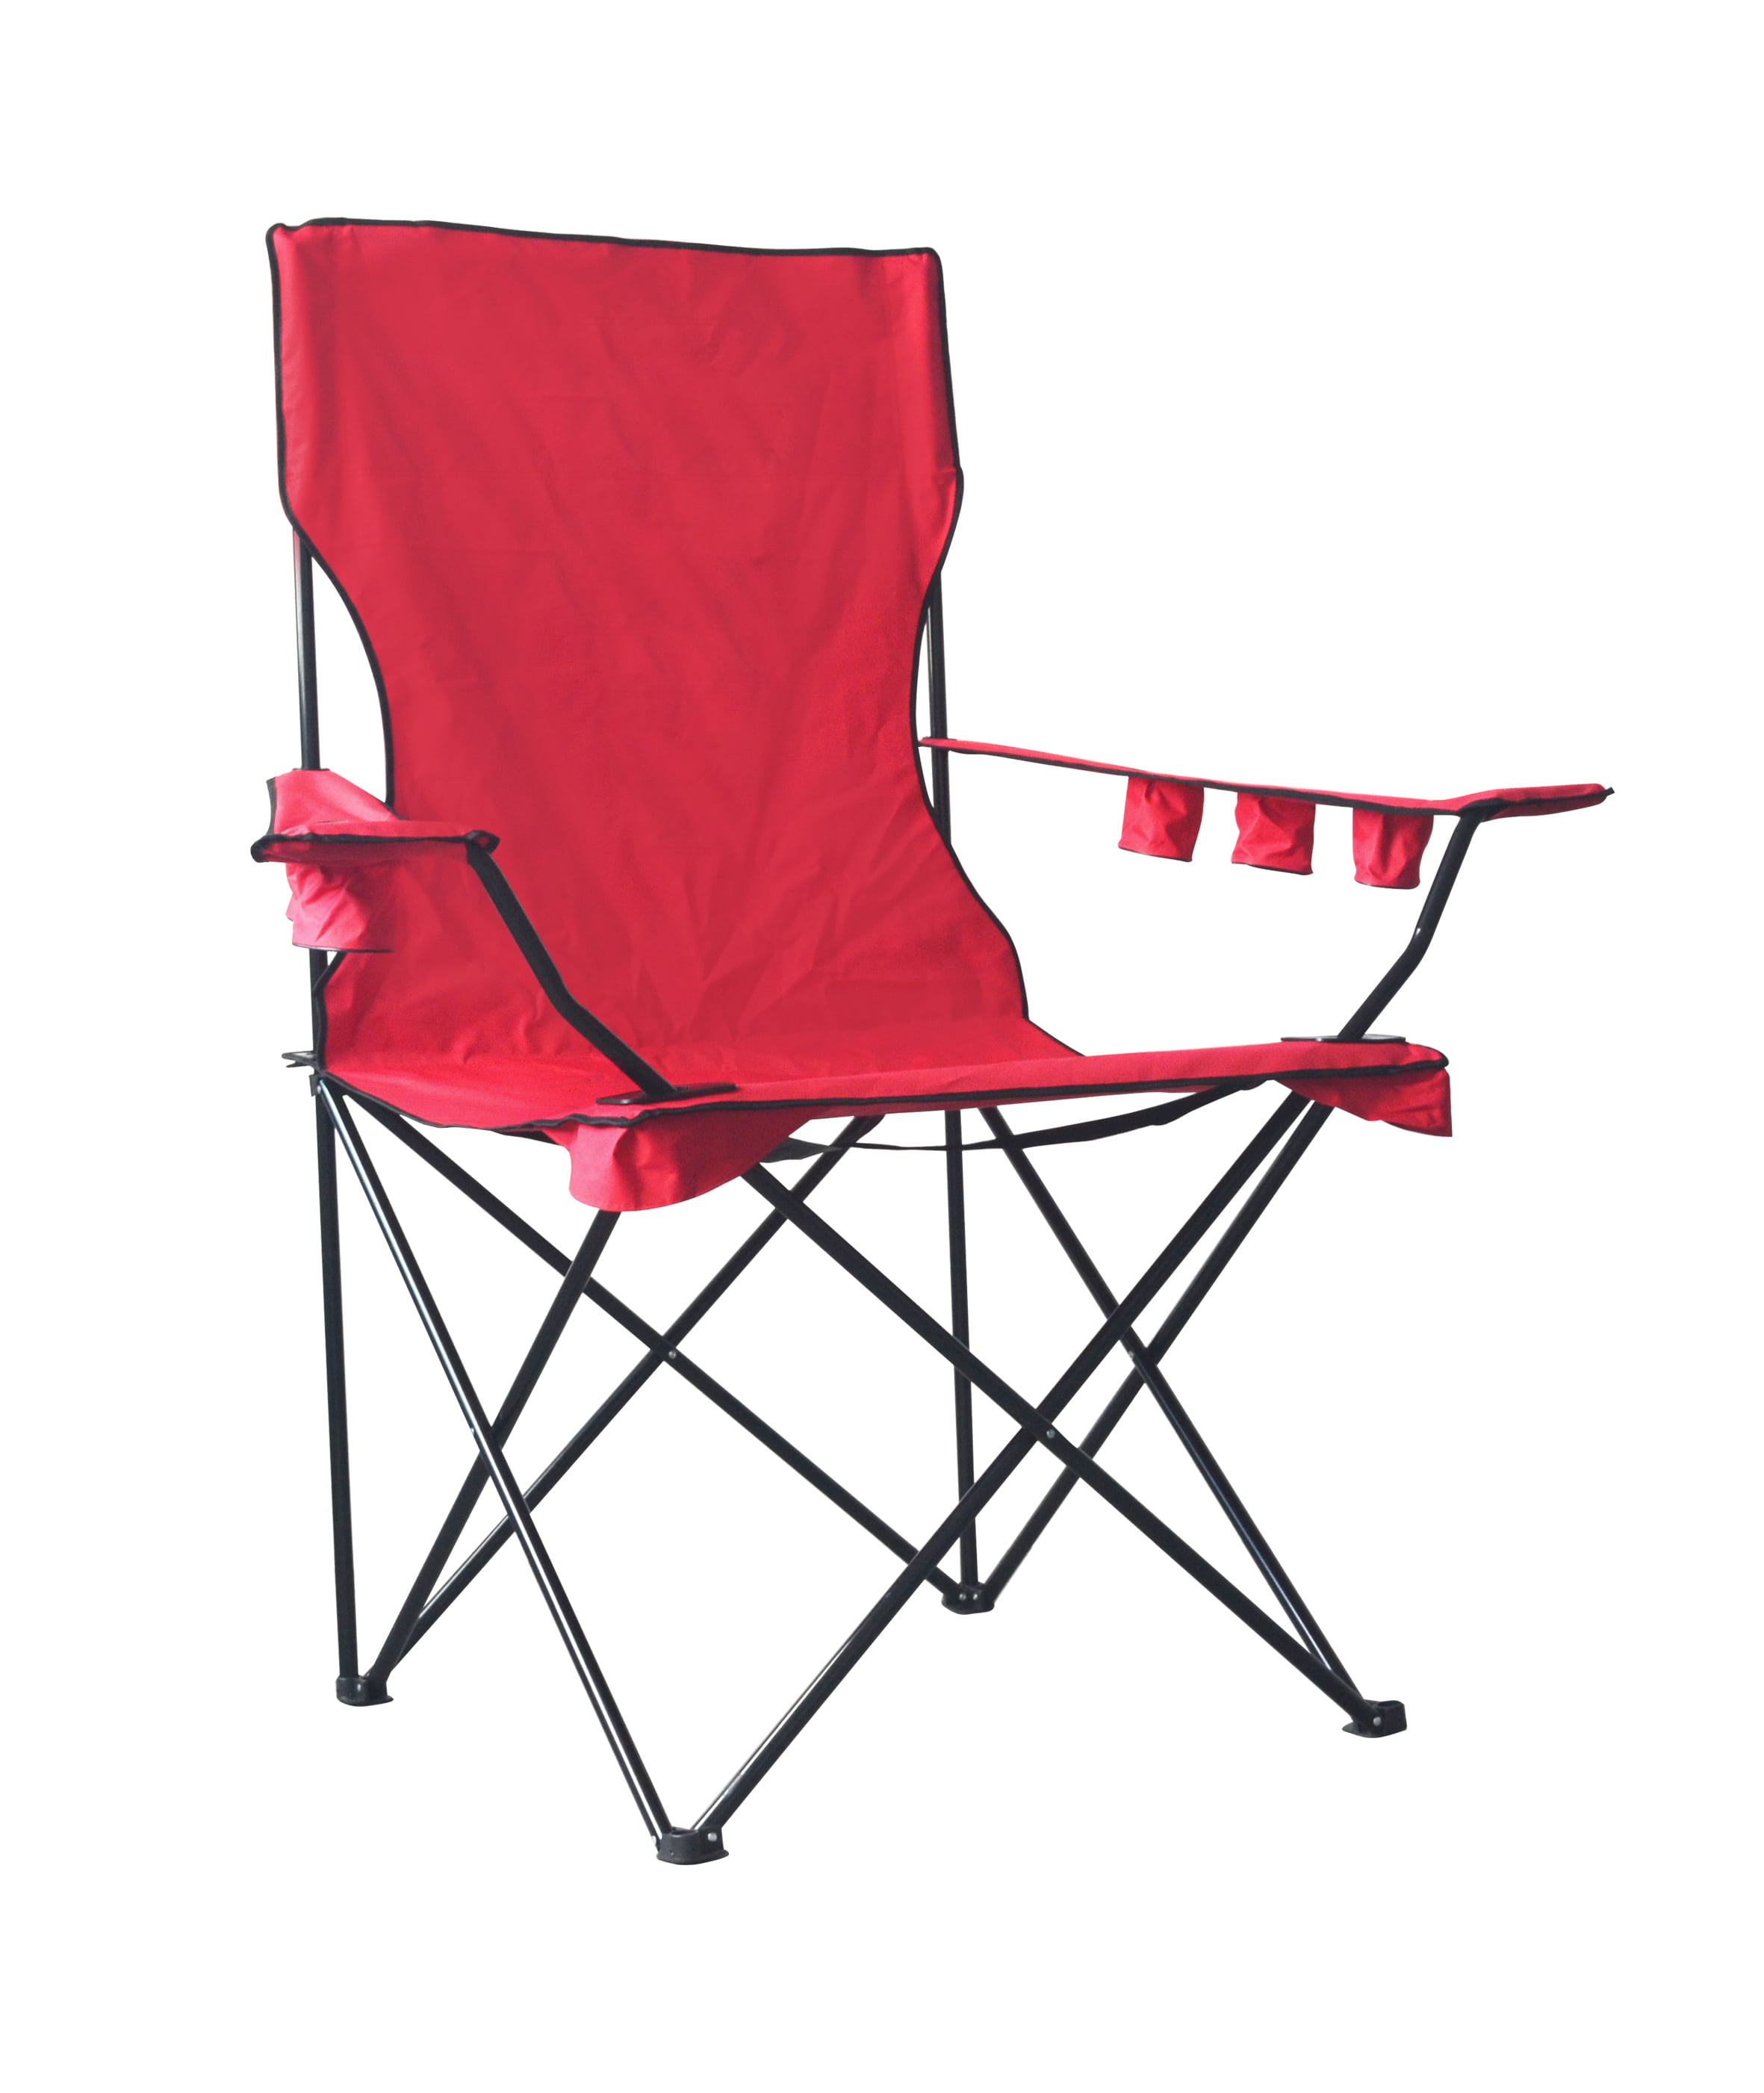 6 Ft Oversize Giant Jumbo Xxl Monster Kingpin Big Folding Chair Outdoor Red Walmartcom Walmartcom